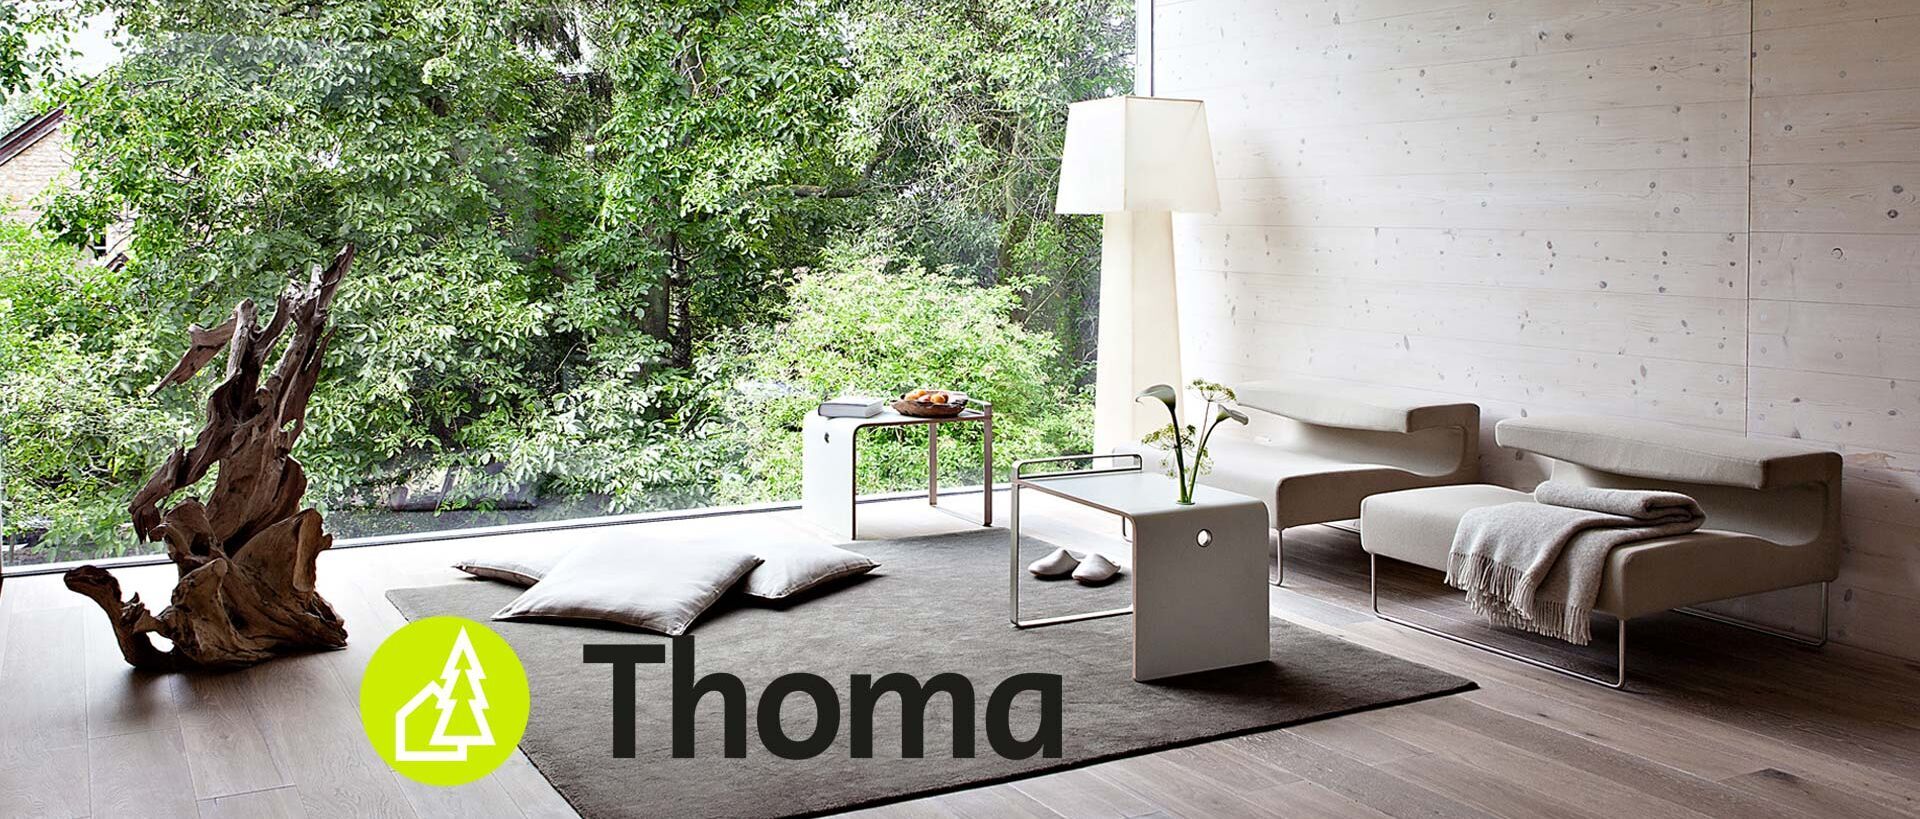 Wohnzimmer mit Blick in einen Garten mit Logo von Thoma